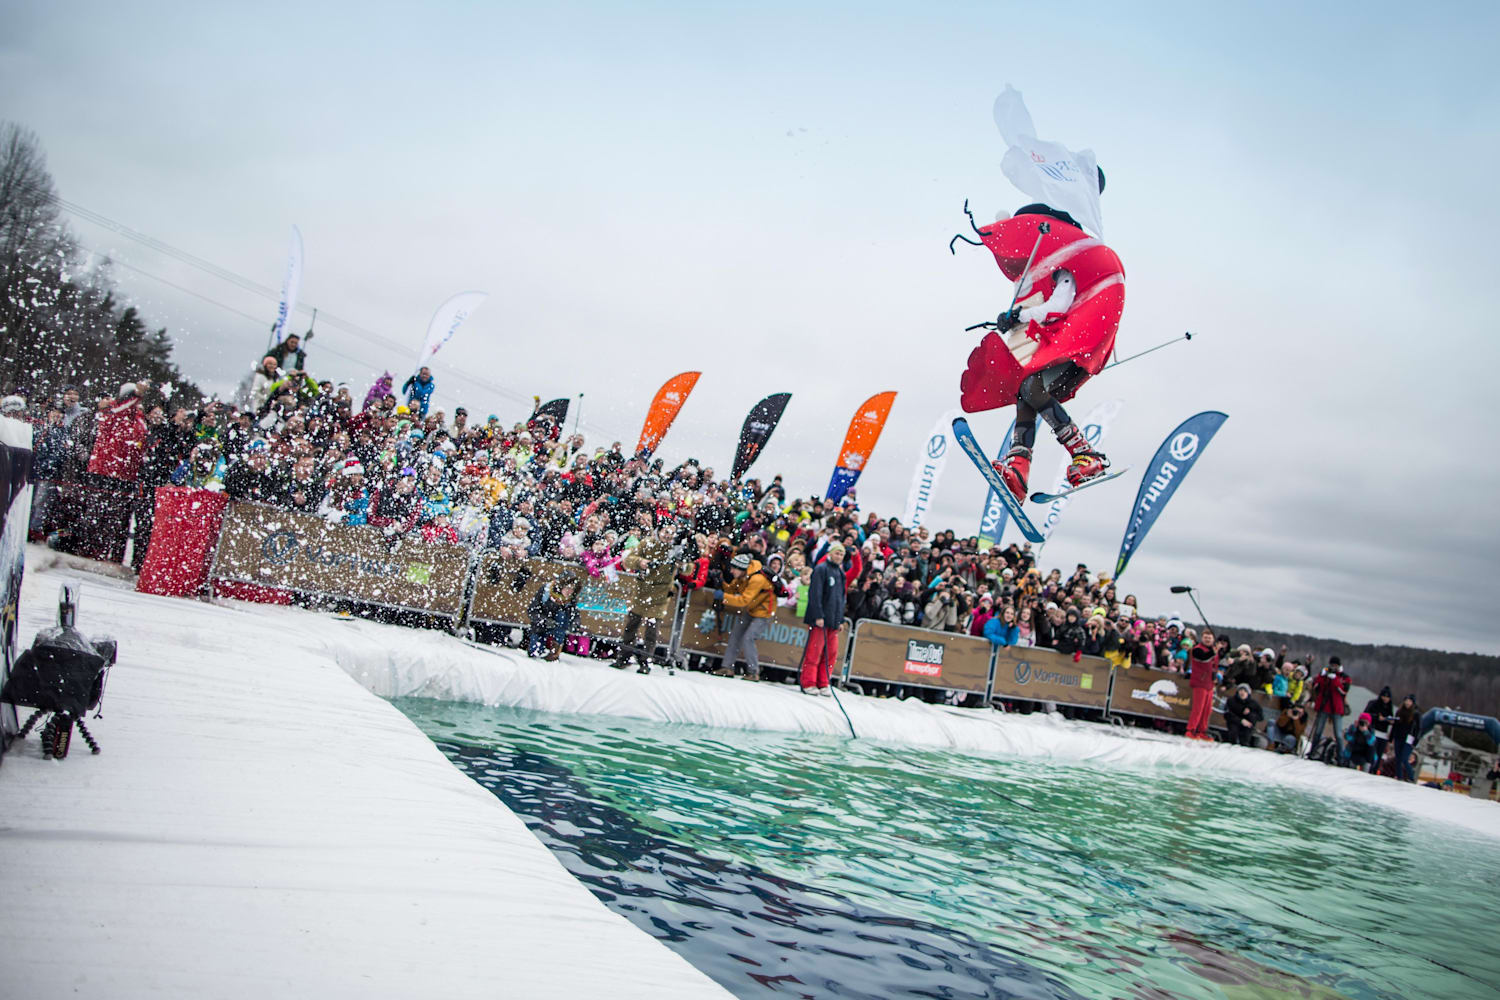 Аква-шоу Red Bull Jump &amp; Freeze отпразднует 10-летие на курорте «Игора» - фото